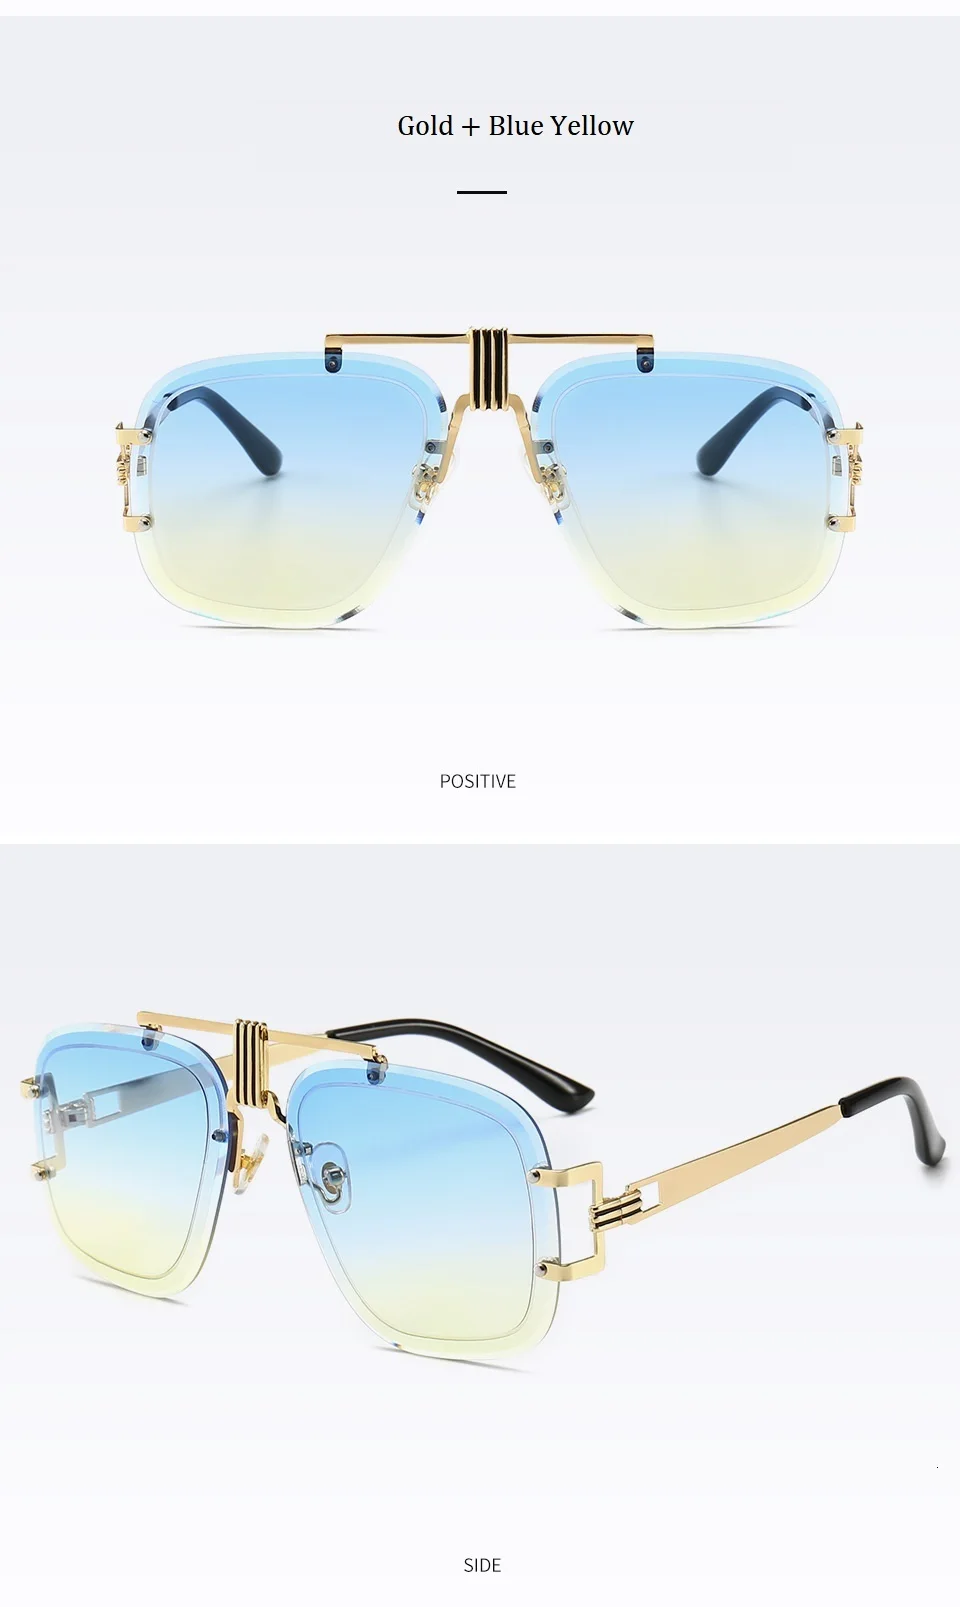 Унисекс без оправы Квадратные Солнцезащитные очки для женщин, 2019; новый тренд; женская обувь Элитный бренд градиентные солнцезащитные очки